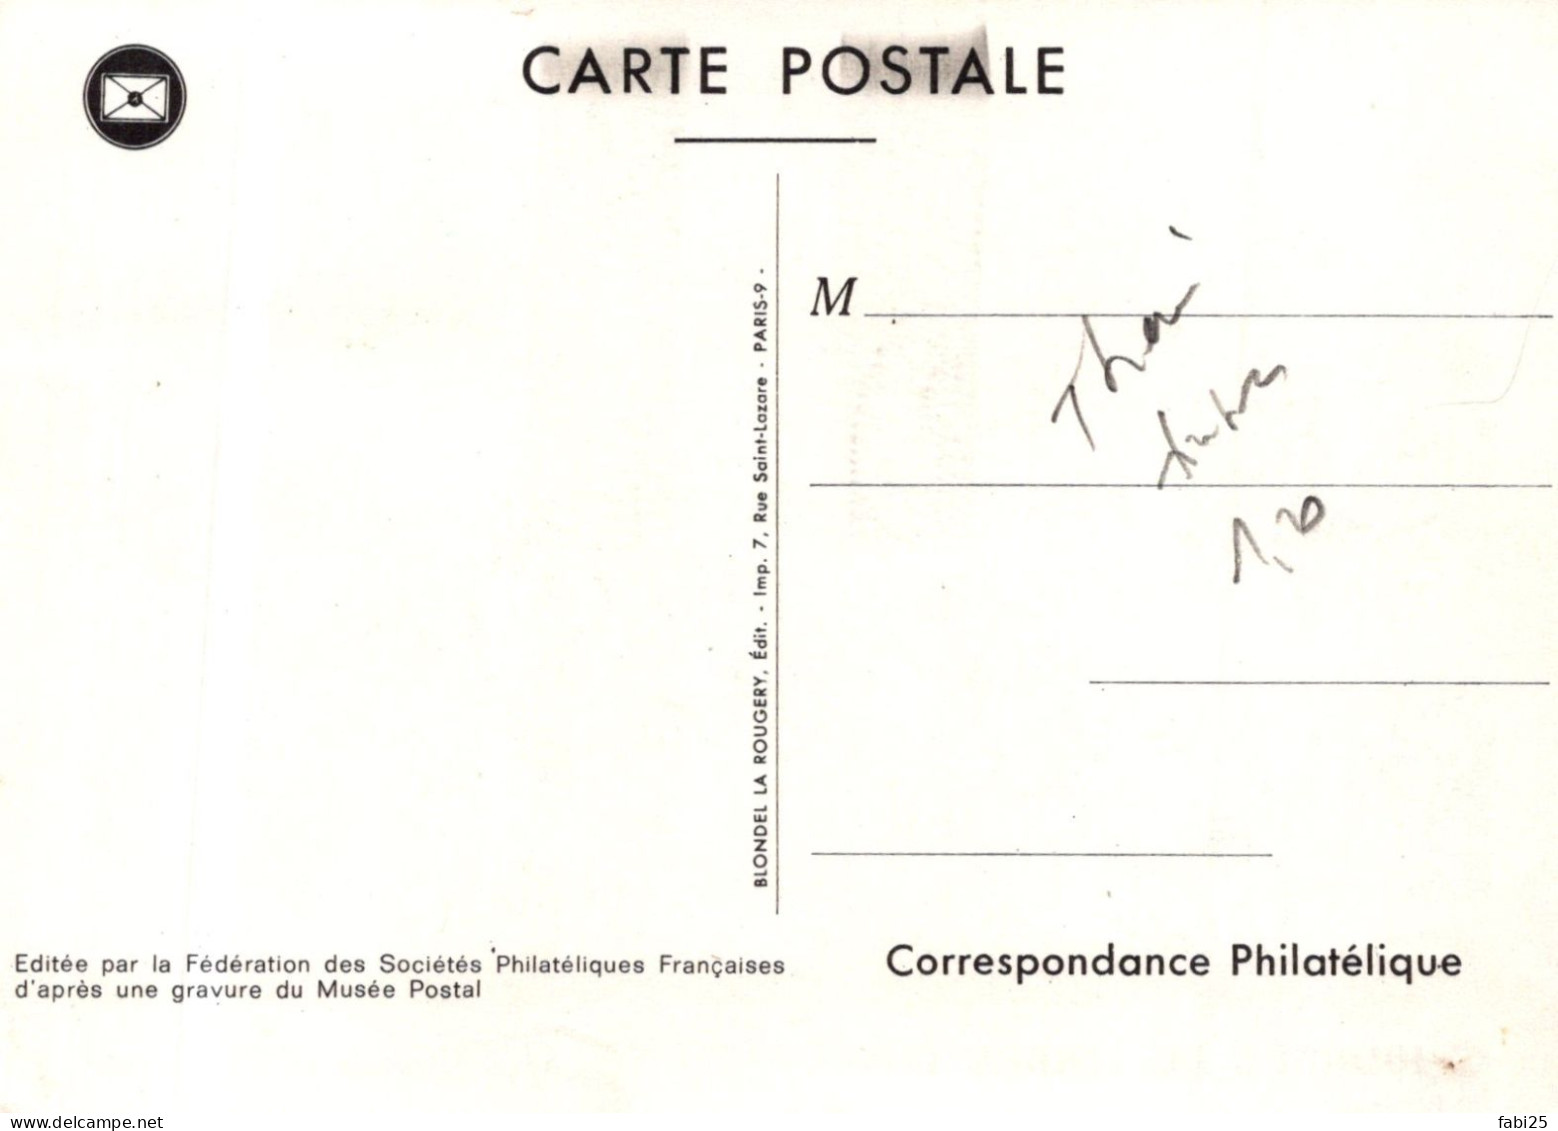 JOURNEE DU TIMBRE 1976 RELAIS DE POSTE THAON LES VOGES 24/3/1973 - Briefmarken (Abbildungen)